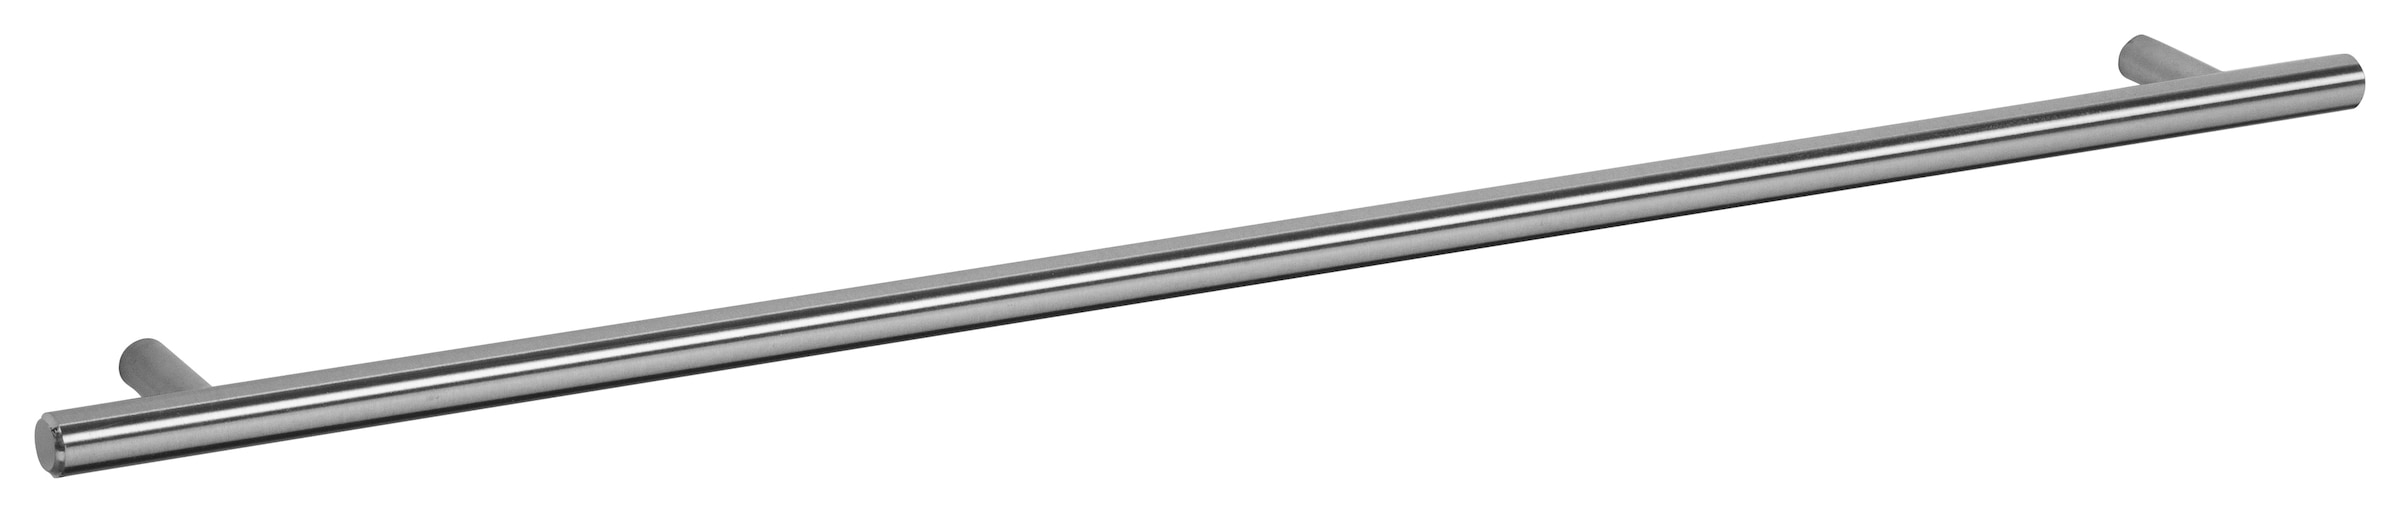 OPTIFIT Spülenschrank »Bern«, 60 cm breit, mit 1 Tür, mit höhenverstellbaren Füssen, mit Metallgriff